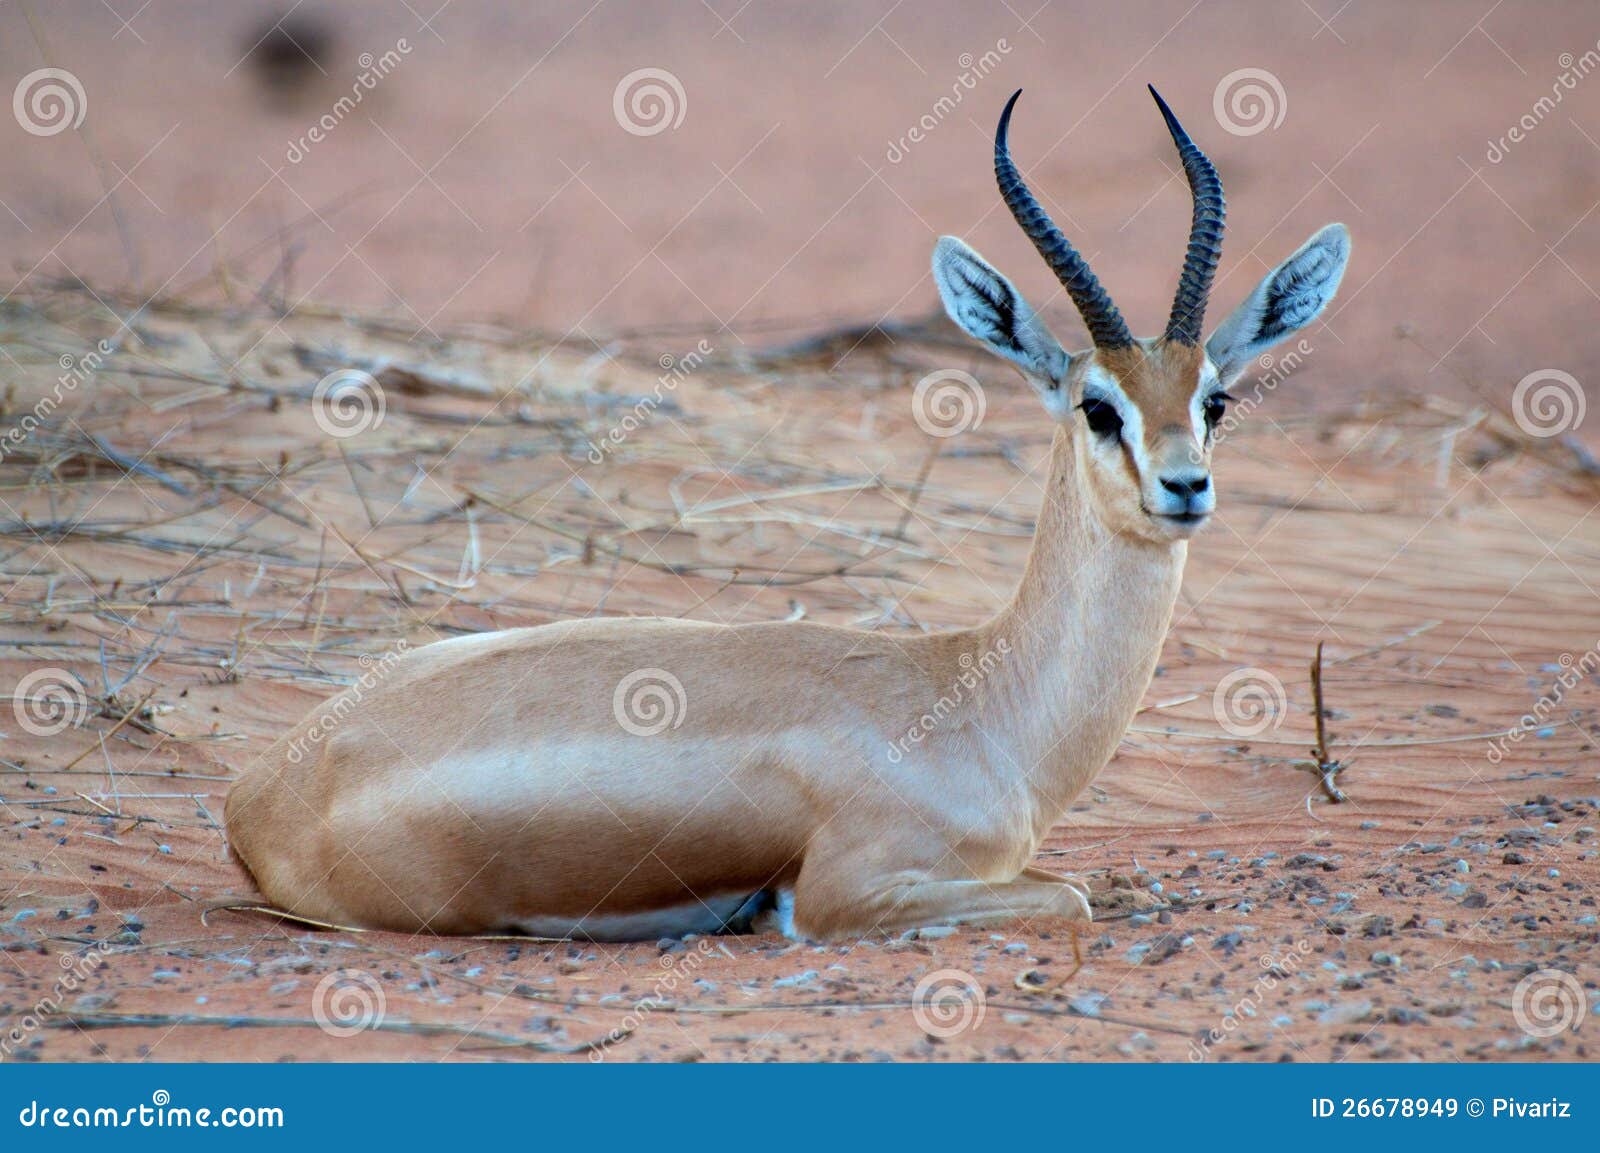 arabian gazelle